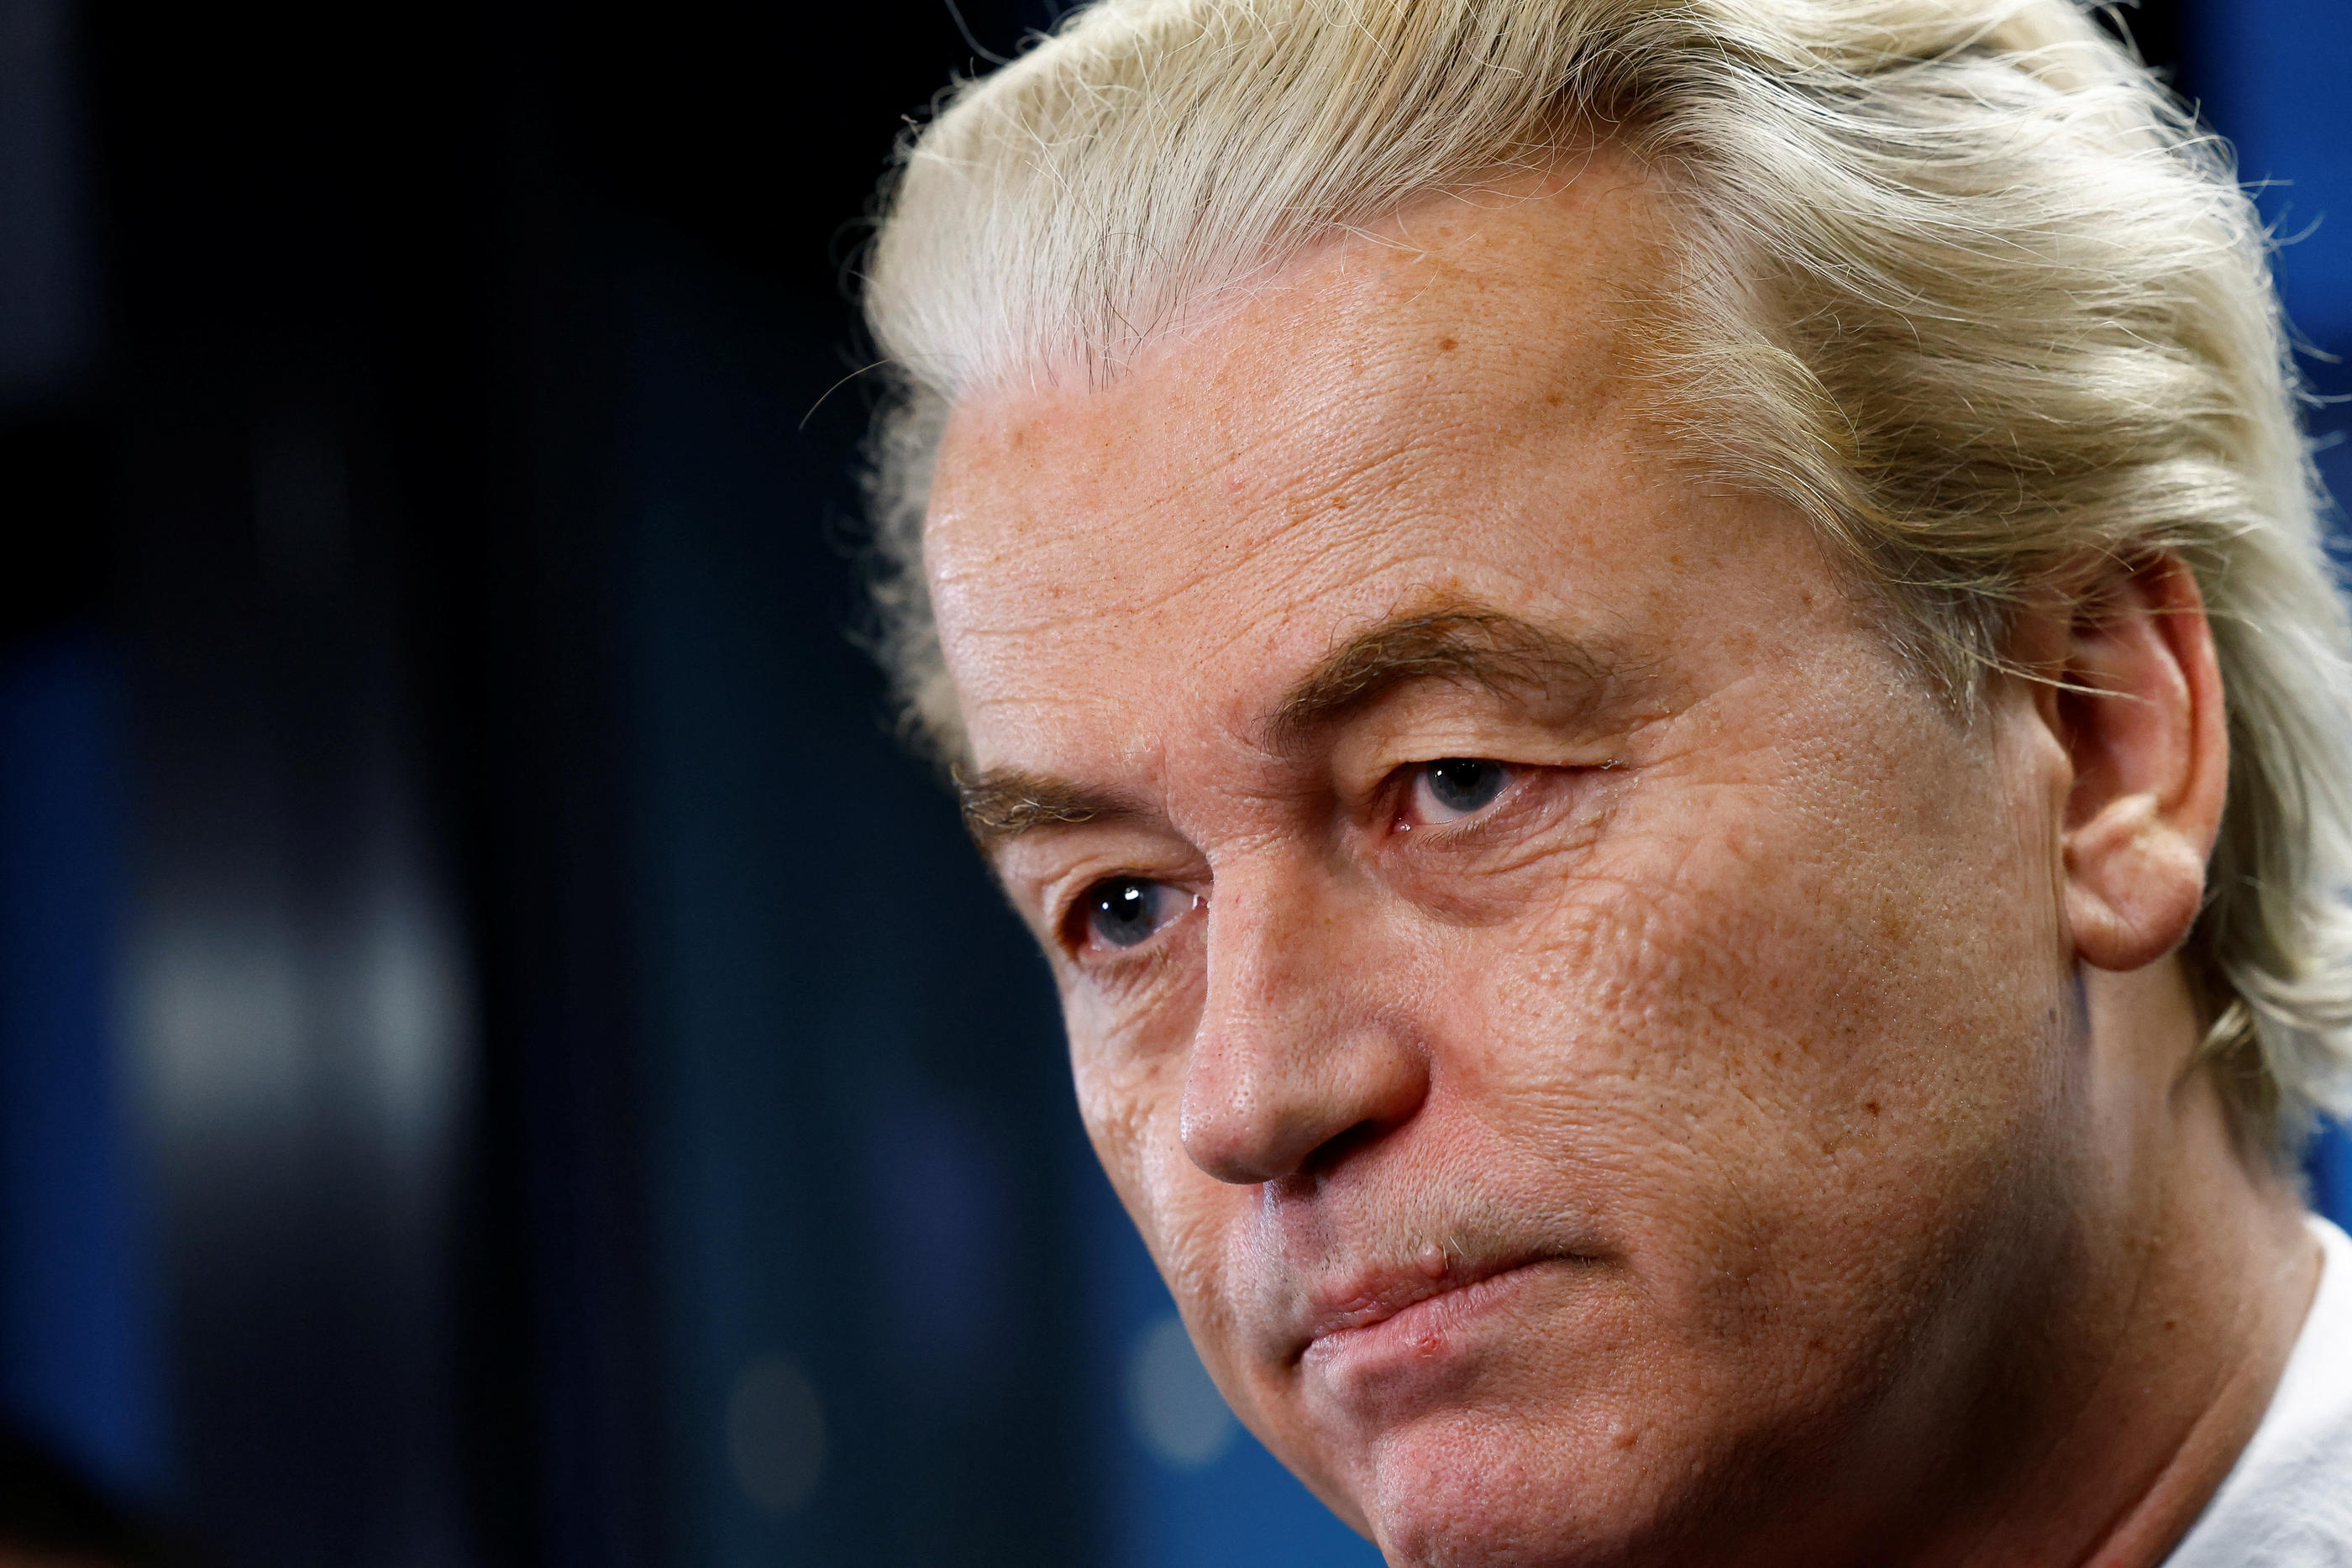 Geert Wilders, à la surprise générale, a remporté les élections législatives néerlandaises avec 37 sièges sur les 150 que compte la chambre basse. Reuters/Piroschka van de Wouw